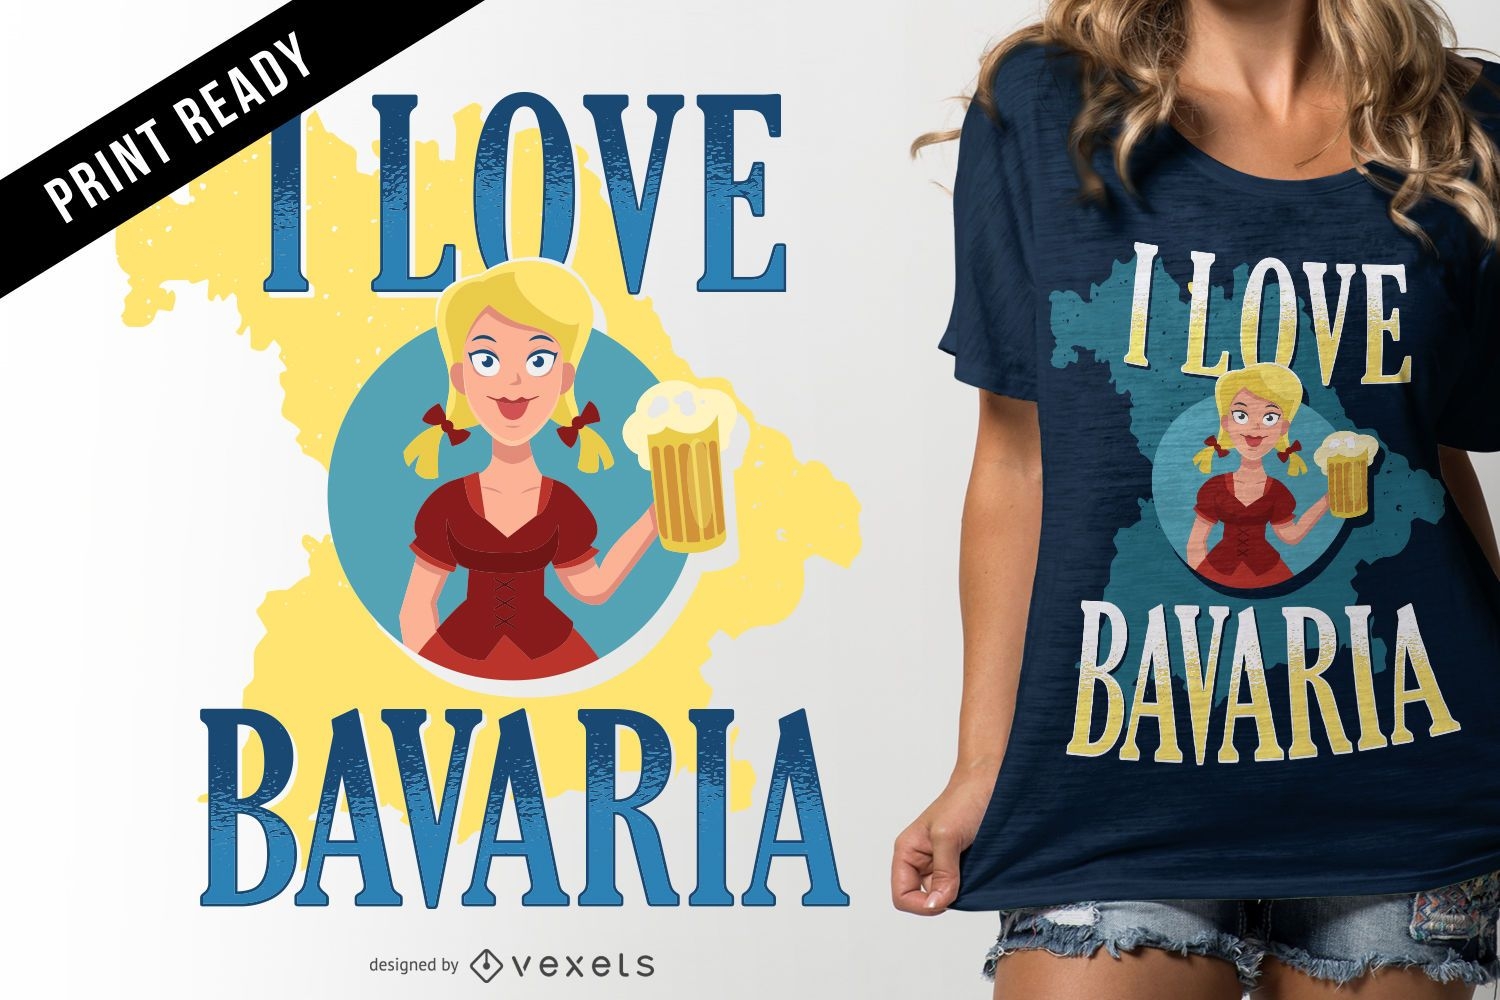 Eu amo o design de camisetas da Bav?ria